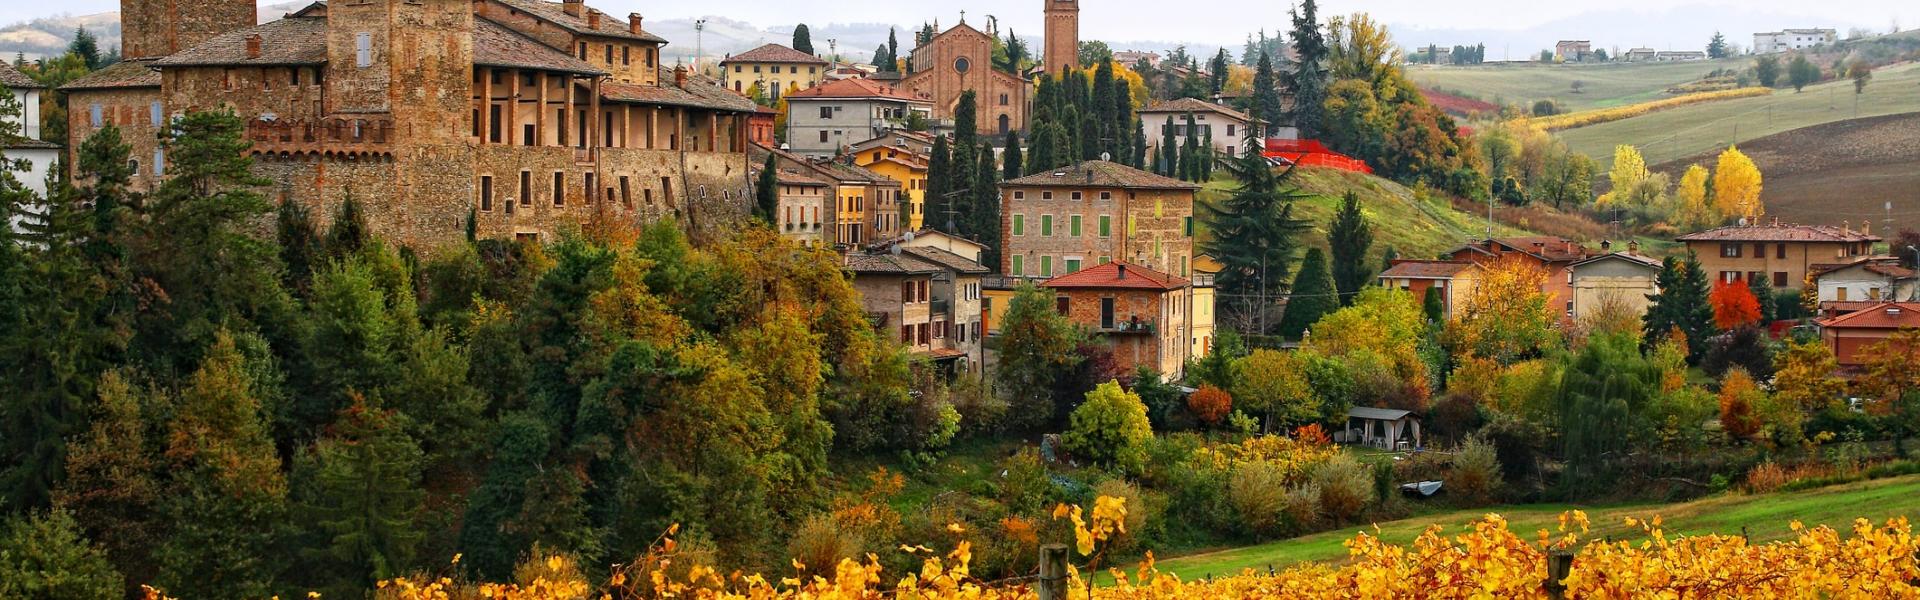 Ferienwohnungen und Ferienhäuser in Emilia-Romagna - Wimdu